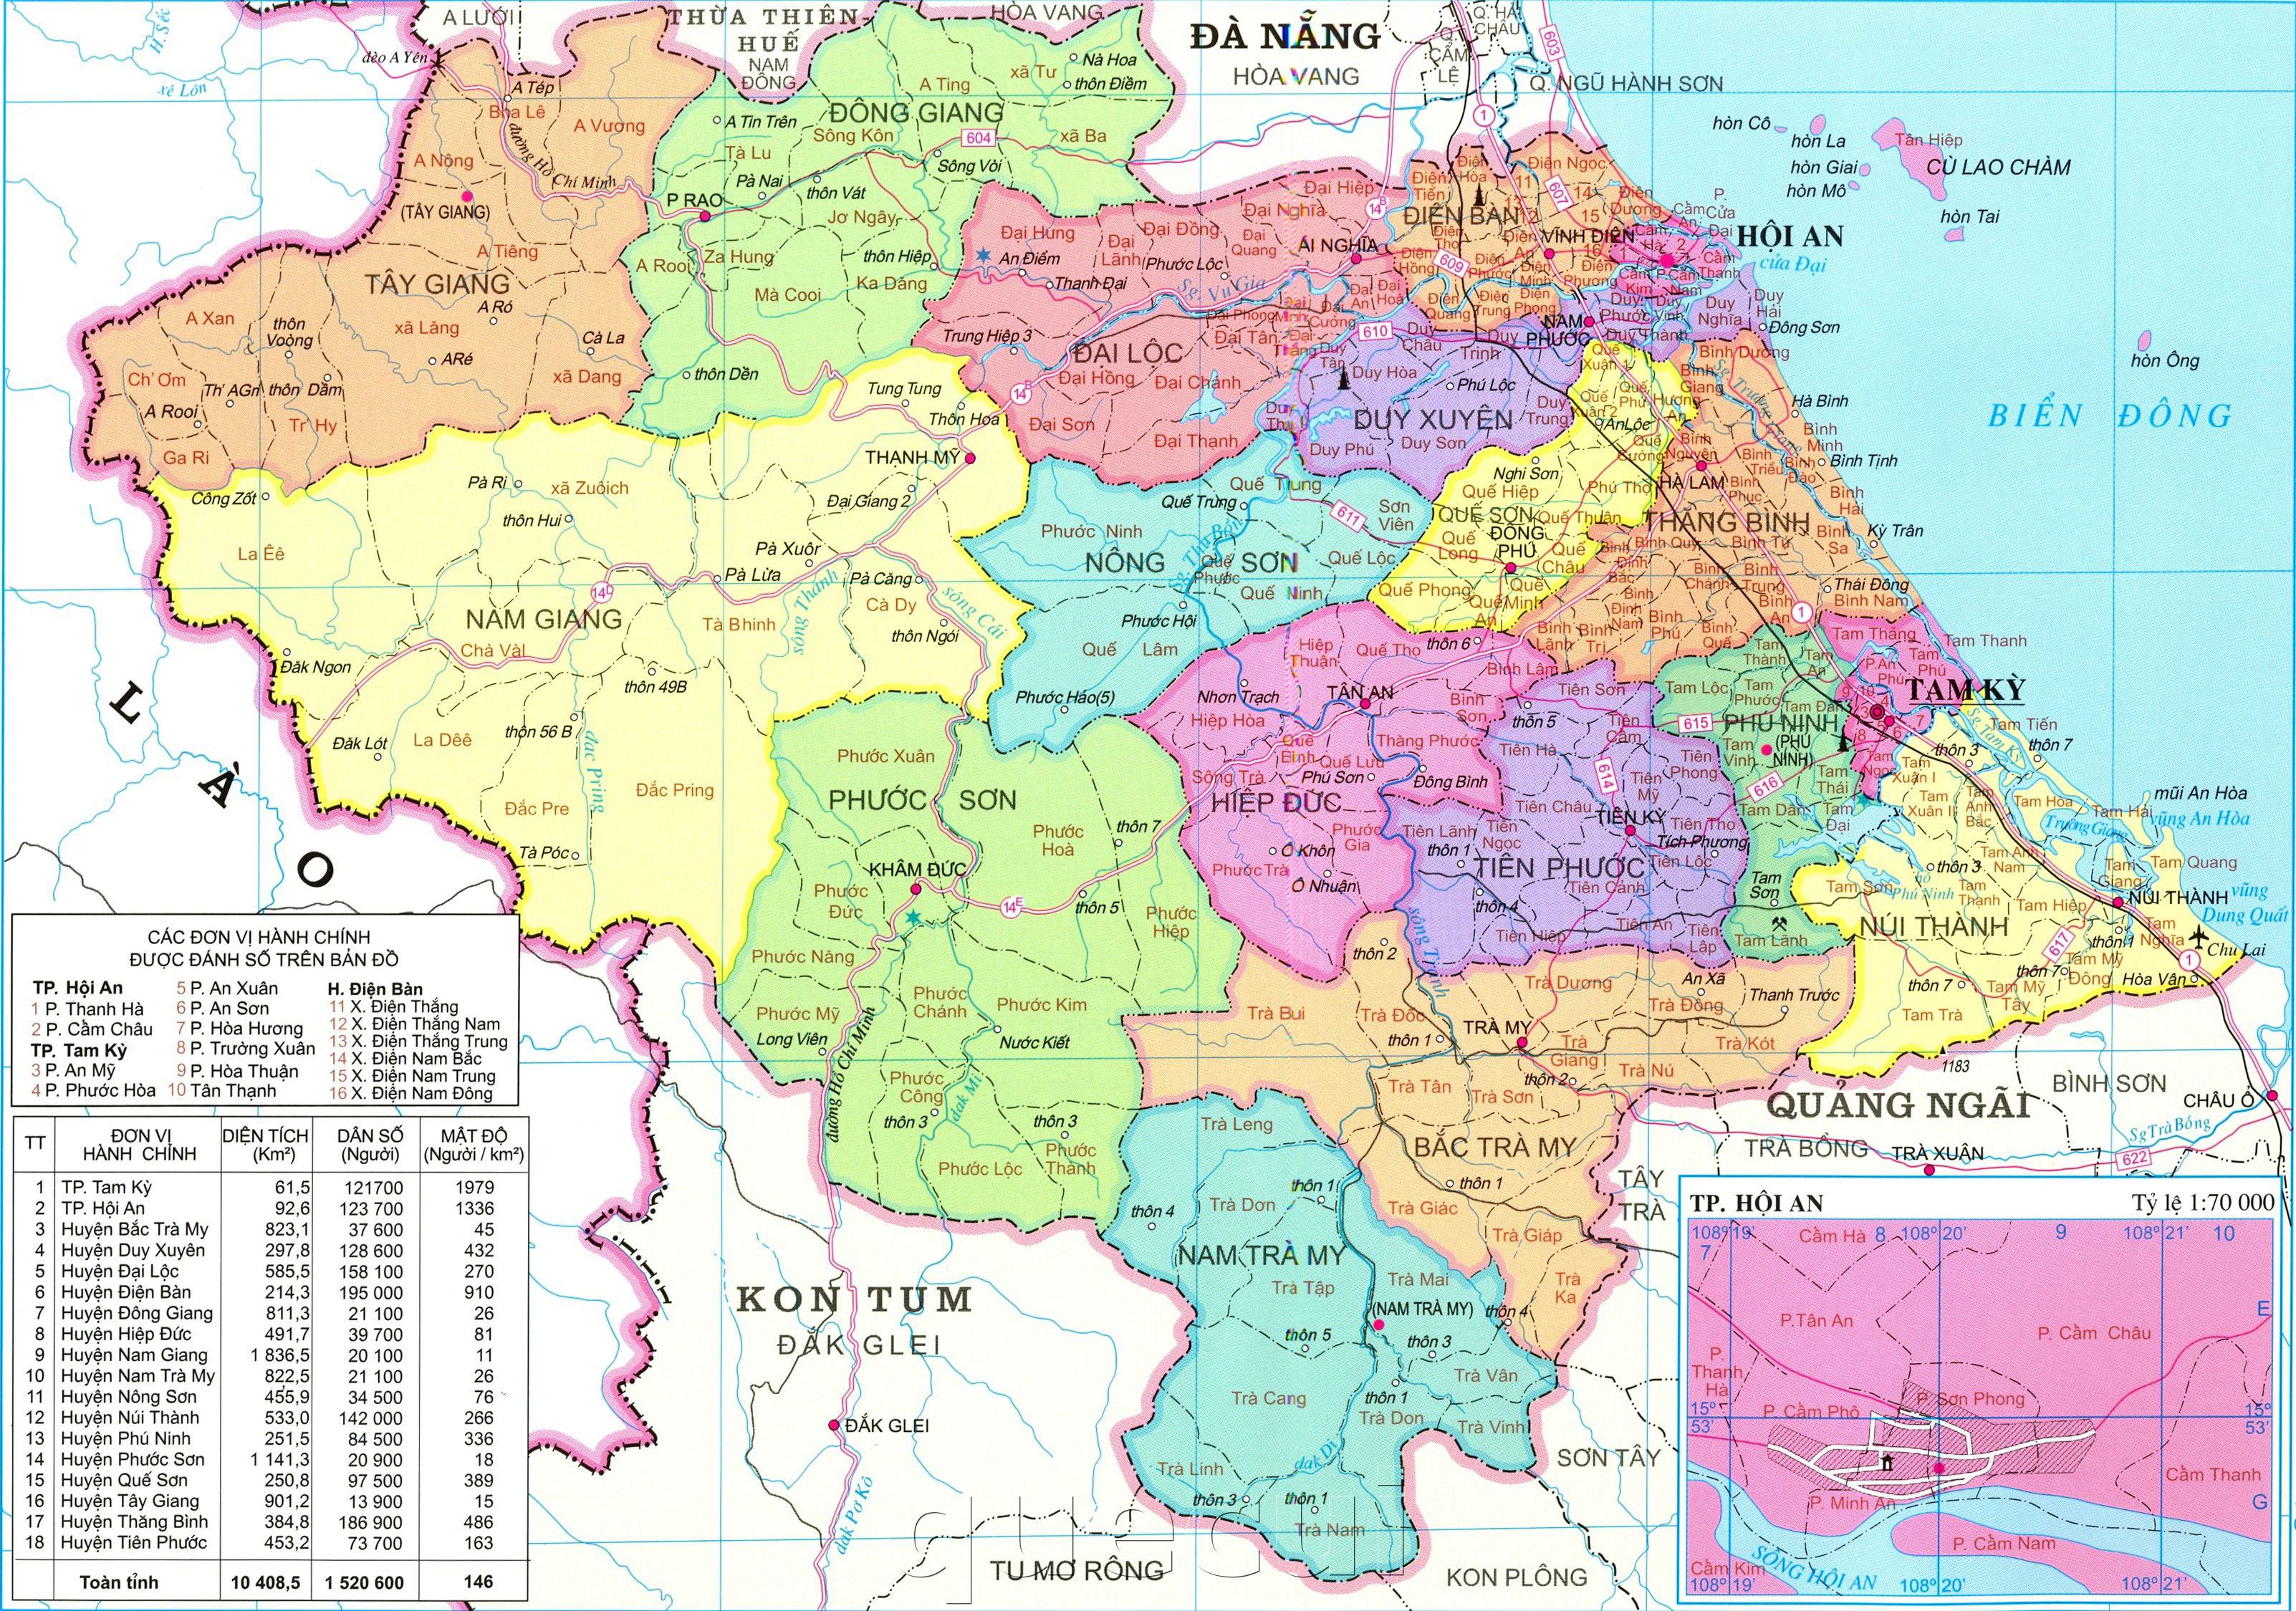 Bản đồ Quảng Nam đang được cập nhật liên tục để đáp ứng nhu cầu của người dân và du khách. Với việc thêm vào những địa danh mới và cải thiện các đường đi, Quảng Nam đang trở thành một điểm đến thông minh và tiện ích cho người dân và khách du lịch.